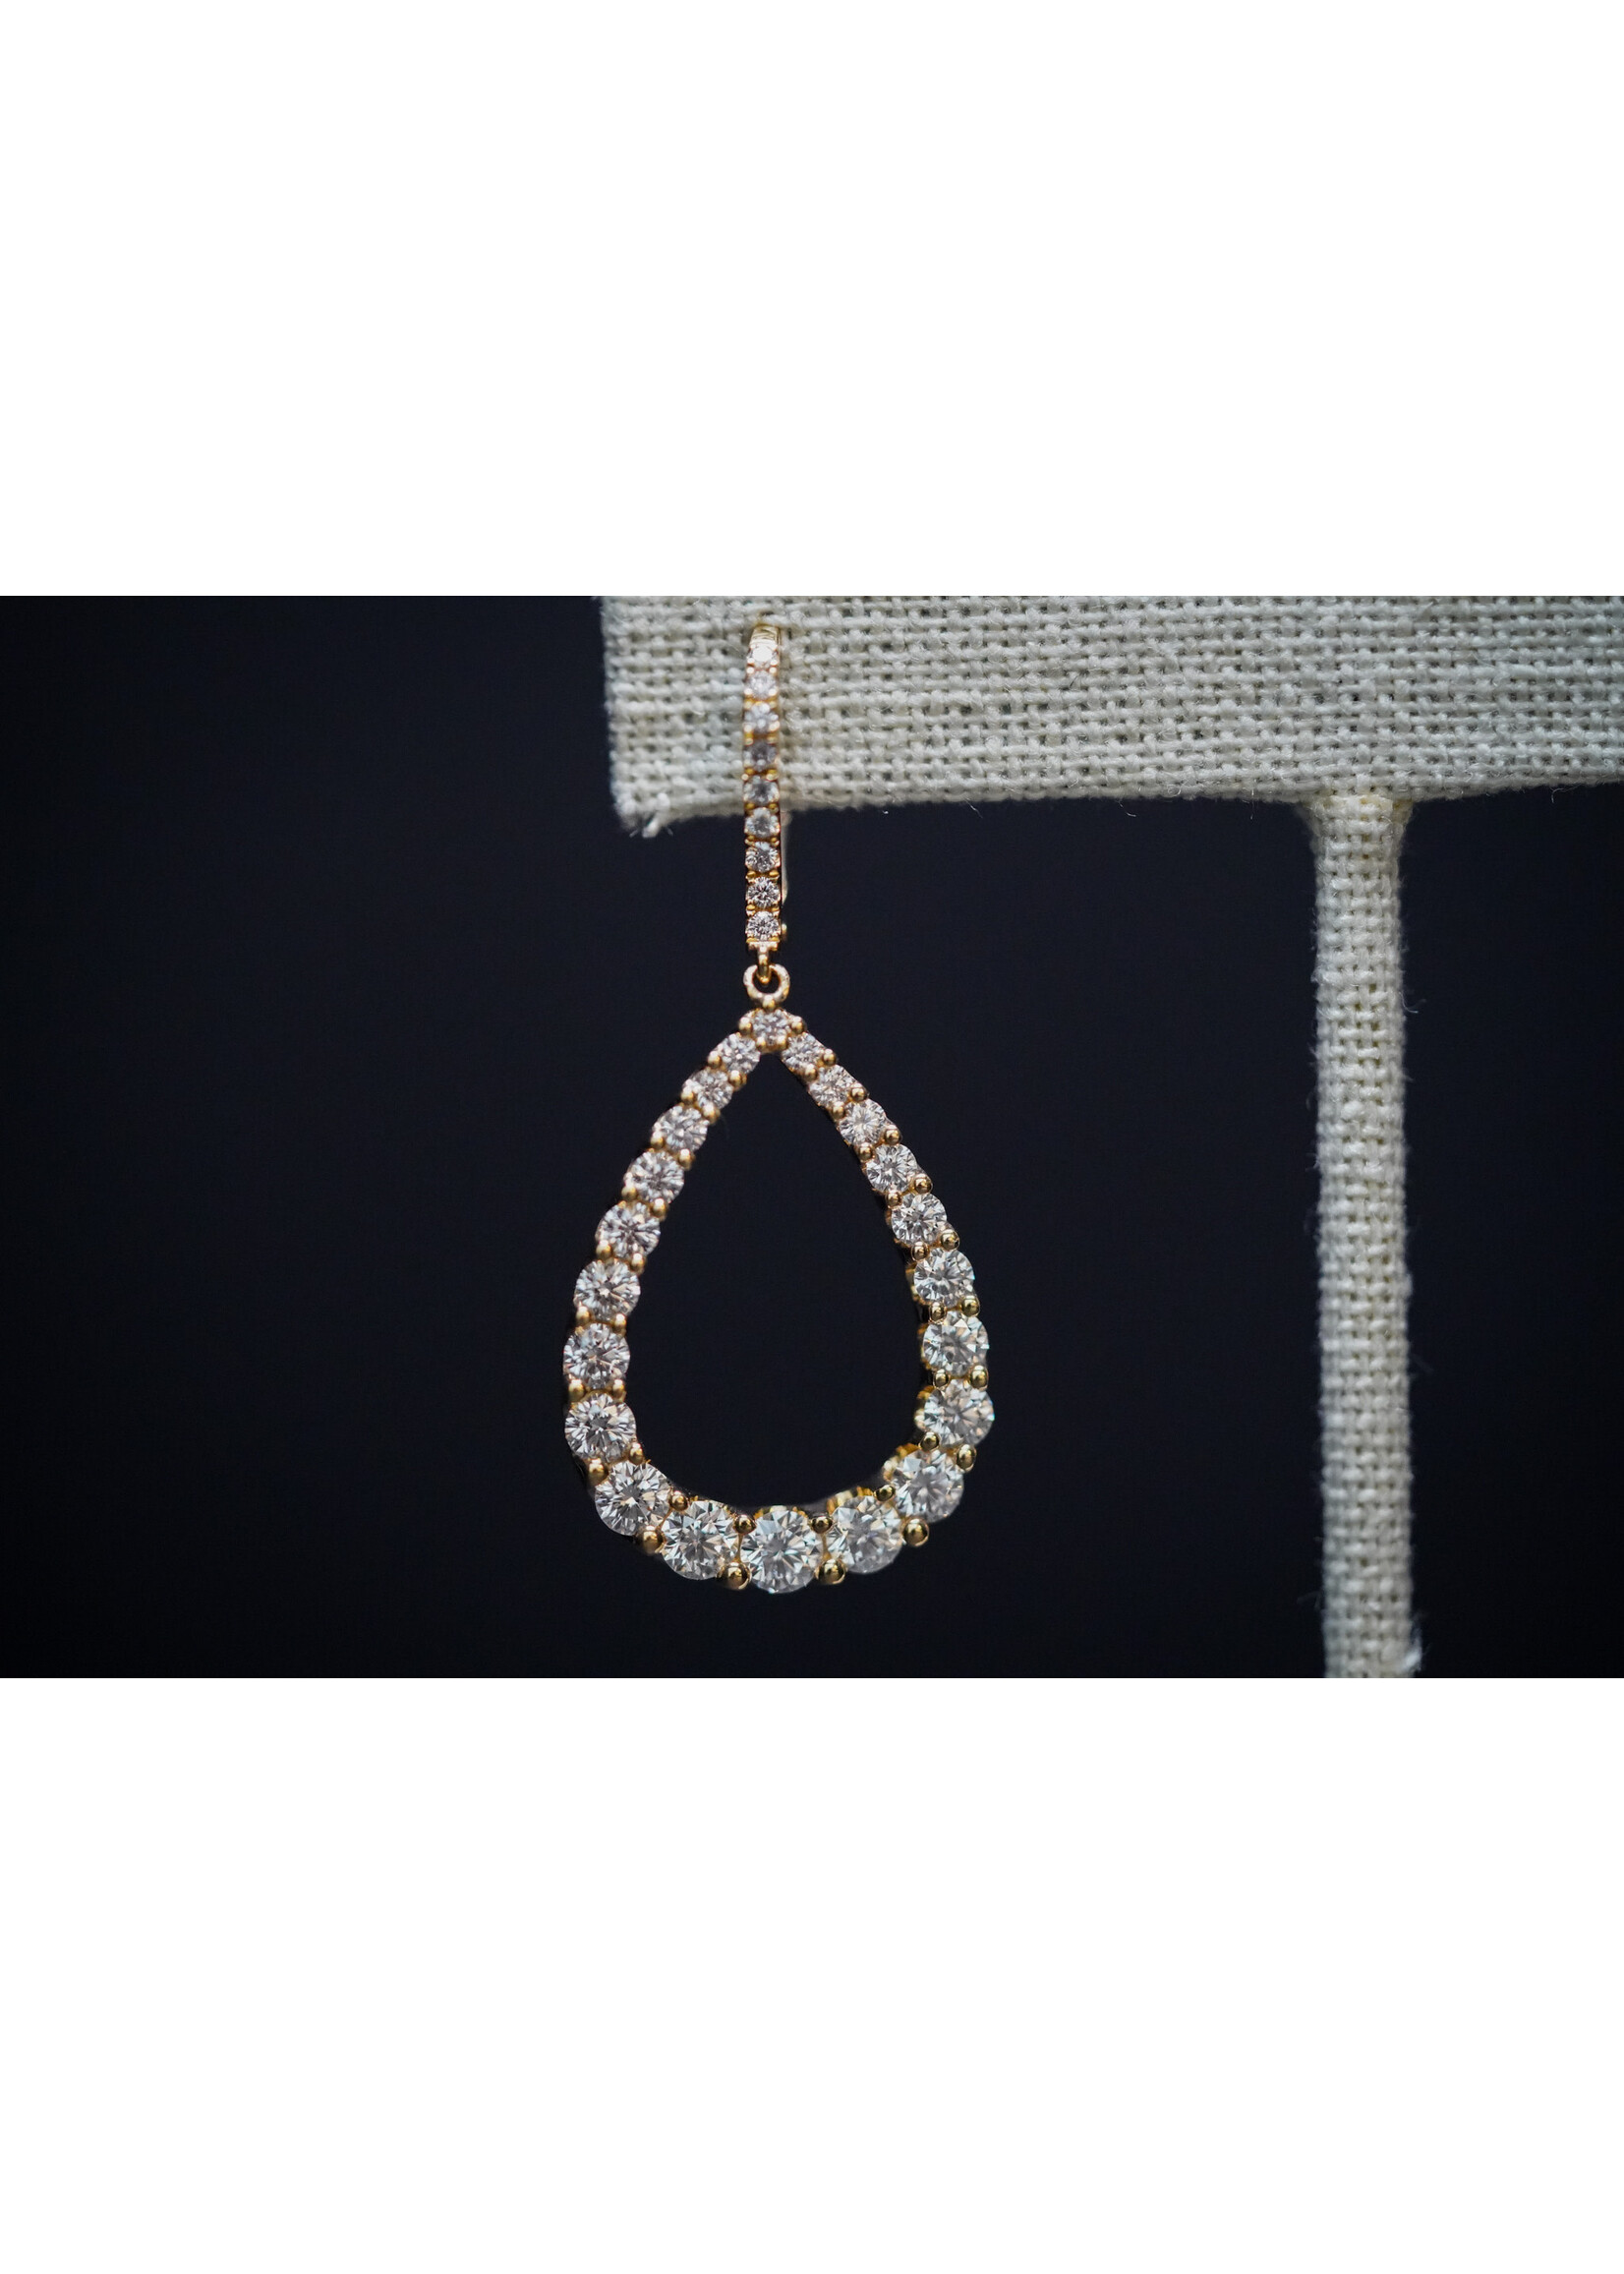 18KY 6.11g 3.51ctw Pear Shape Diamond Drop Earrings